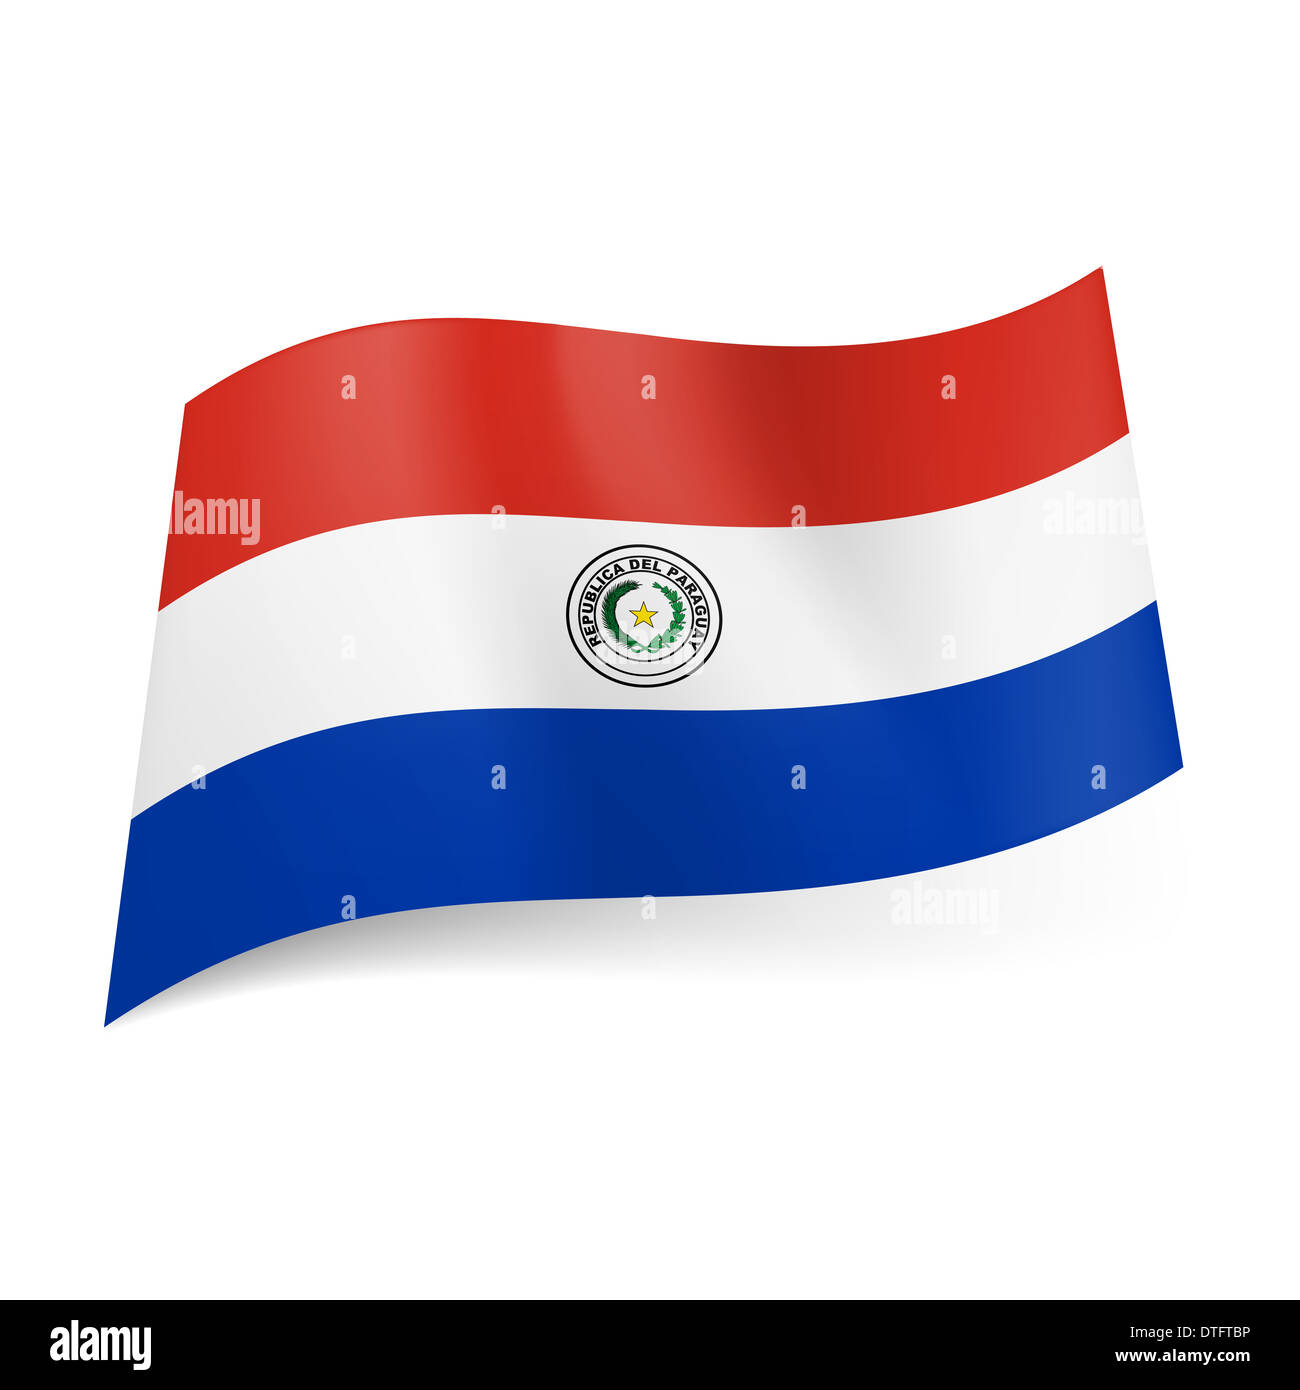 Bandiera Nazionale del Paraguay: rosso, bianco e blu strisce orizzontali  con stemma sulla fascia centrale Foto stock - Alamy